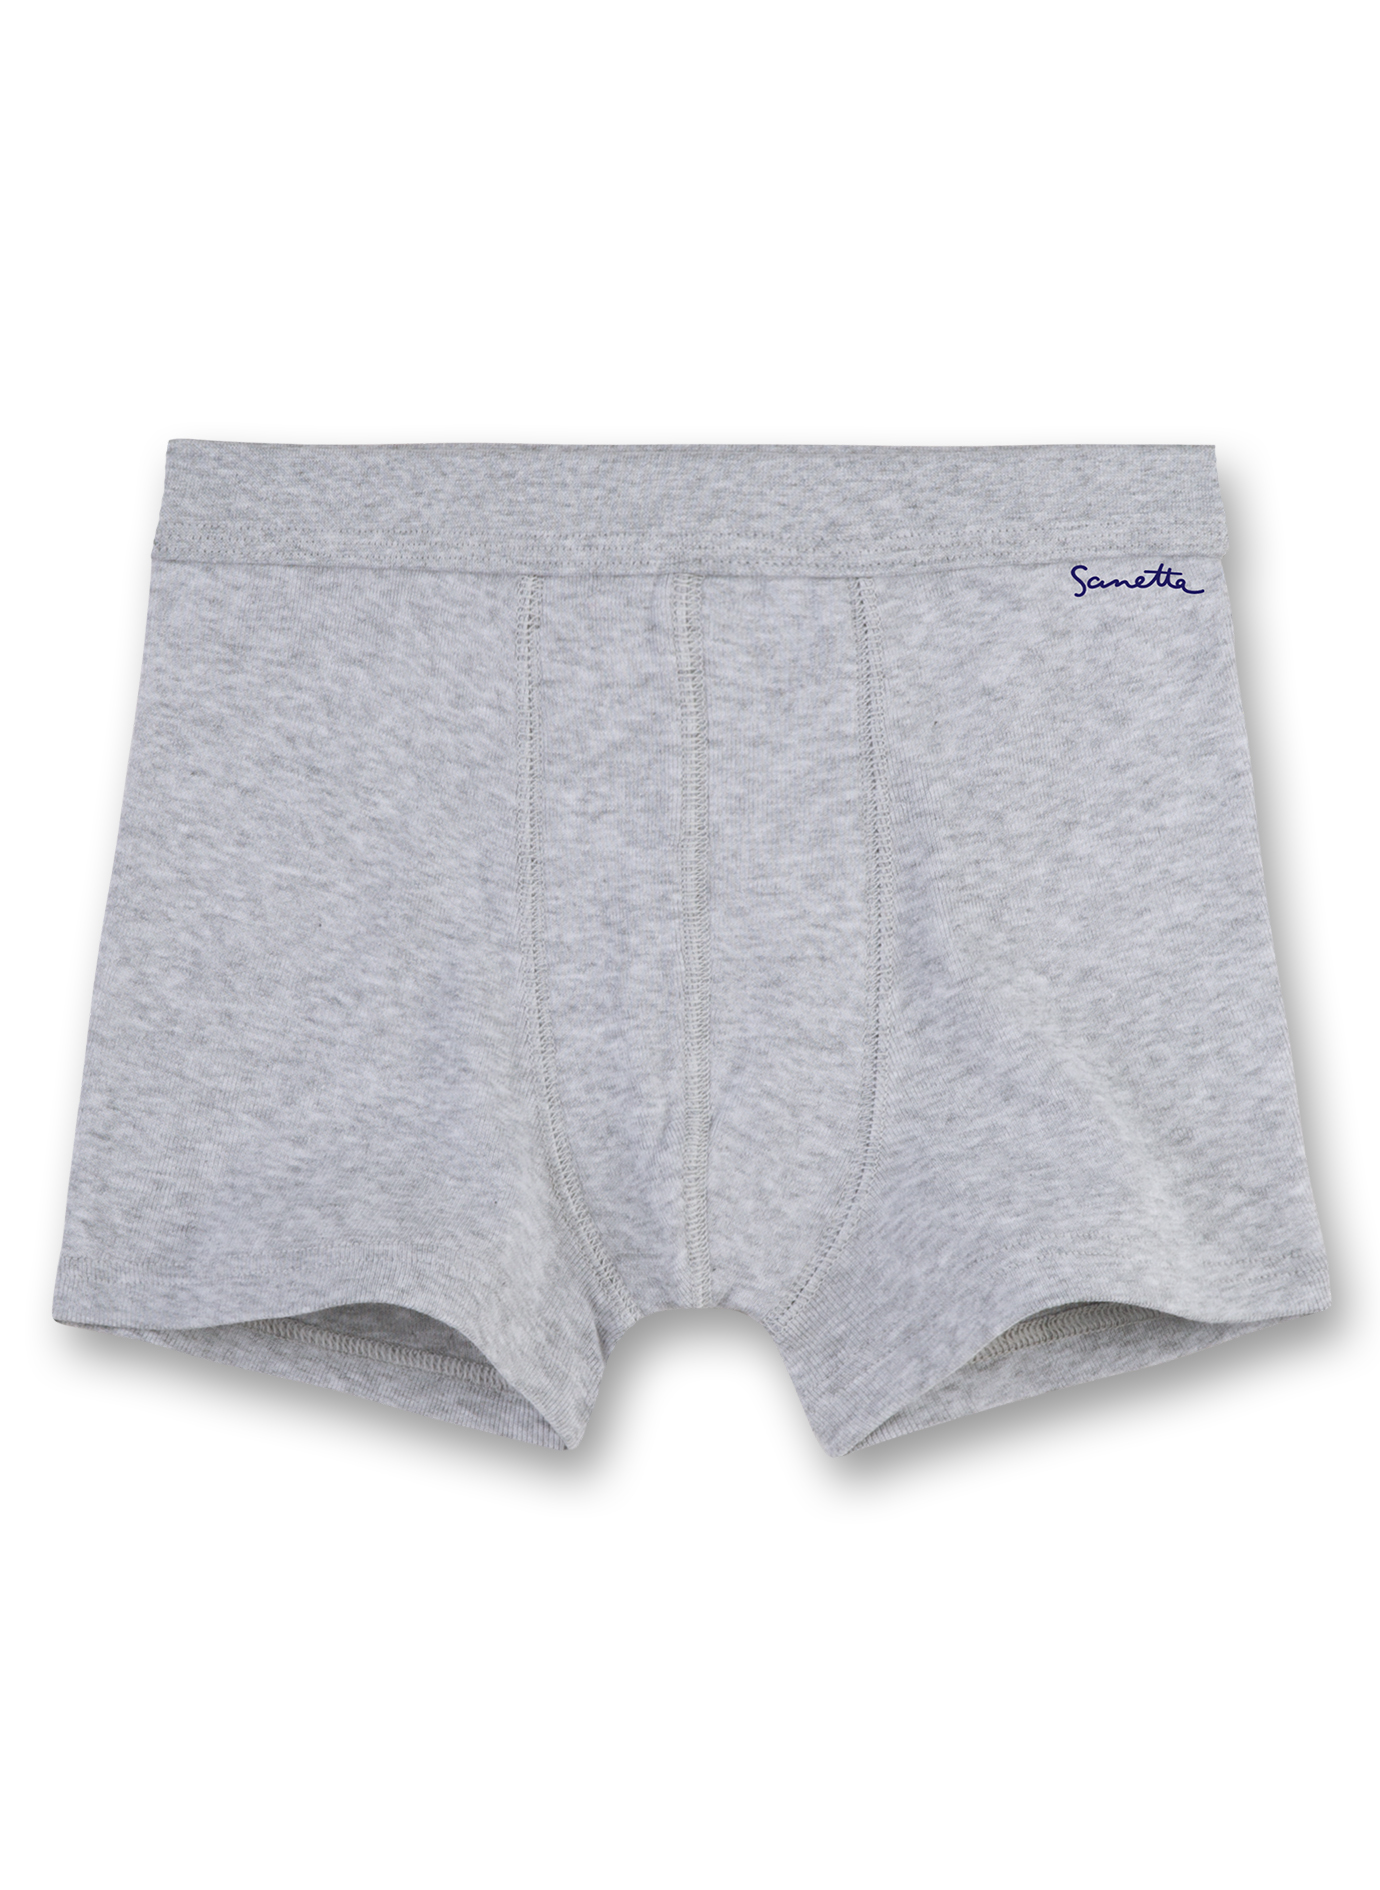 Jungen-Shorts (Dreierpack)